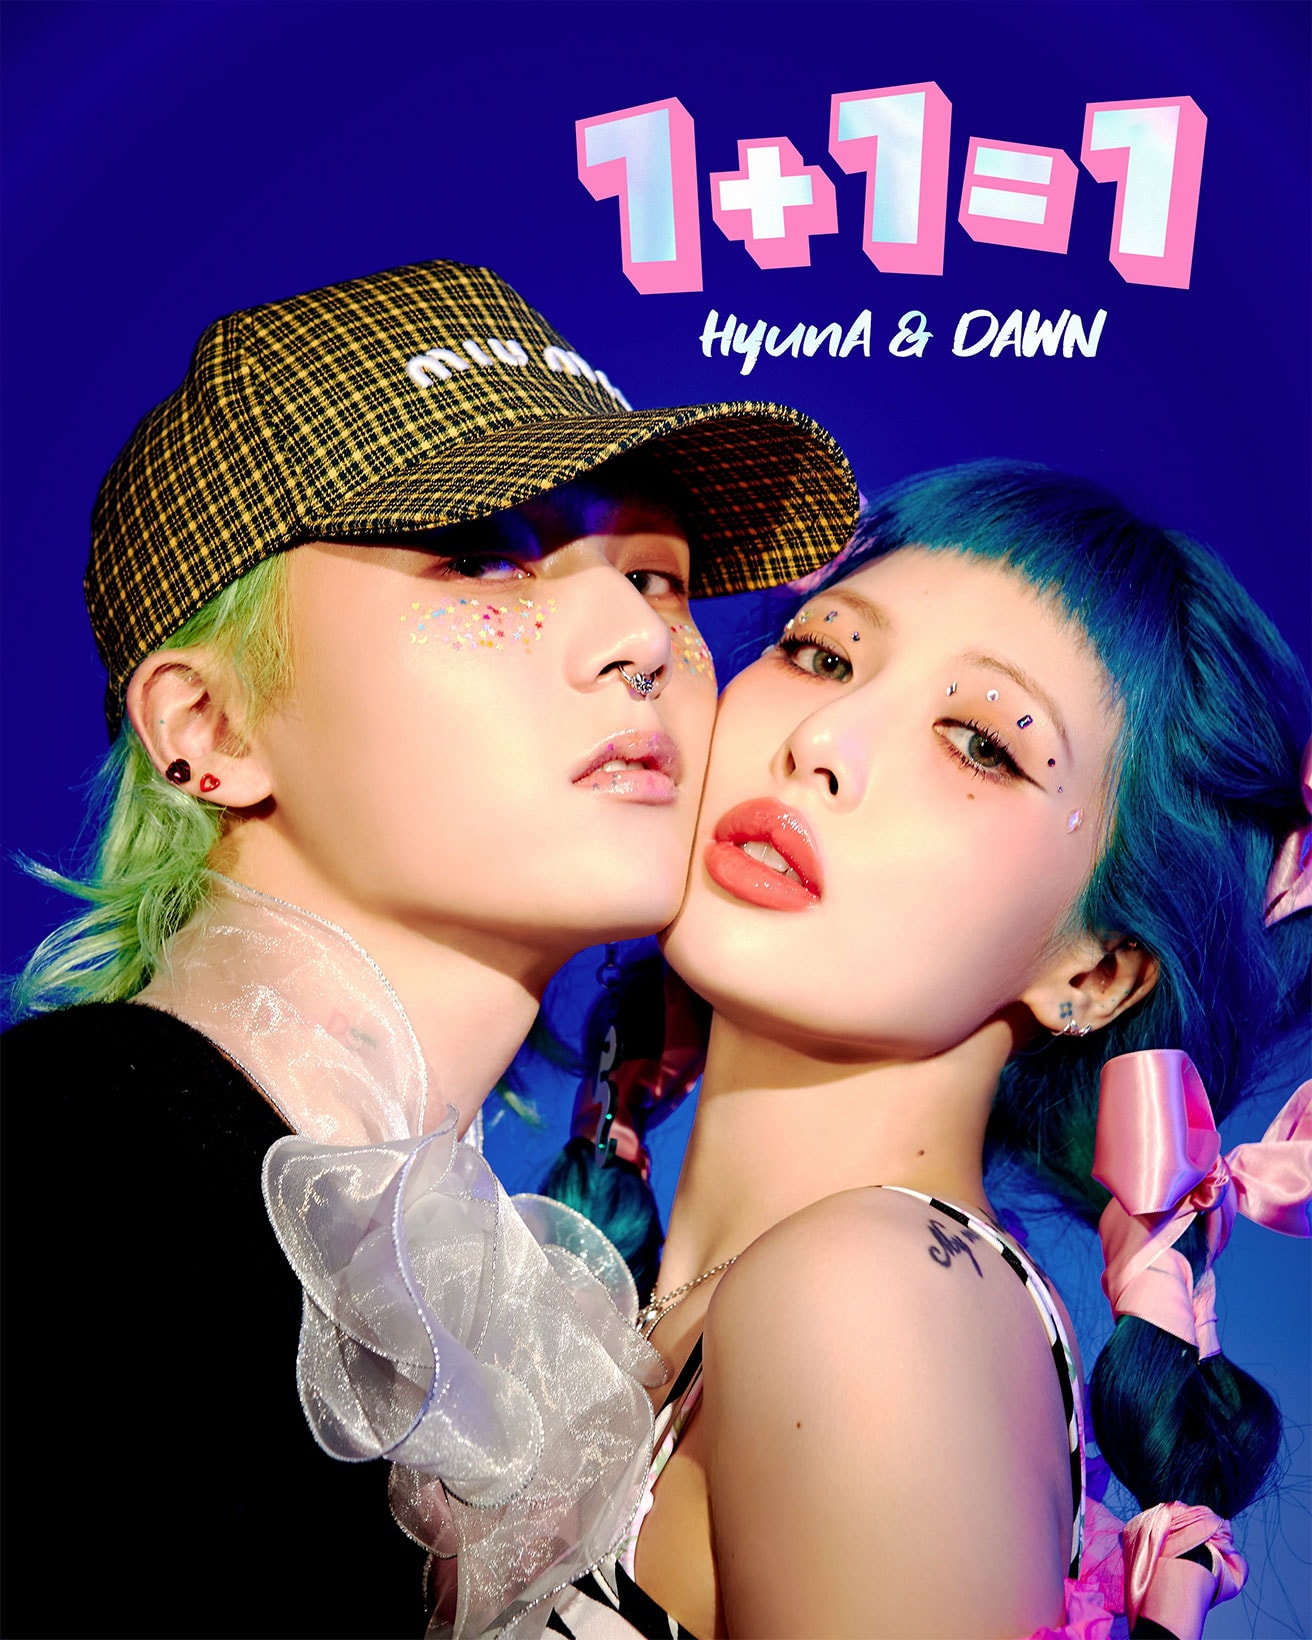 hyuna dawn duet mini album 1+1=1 cover tracklist music video documentary release date